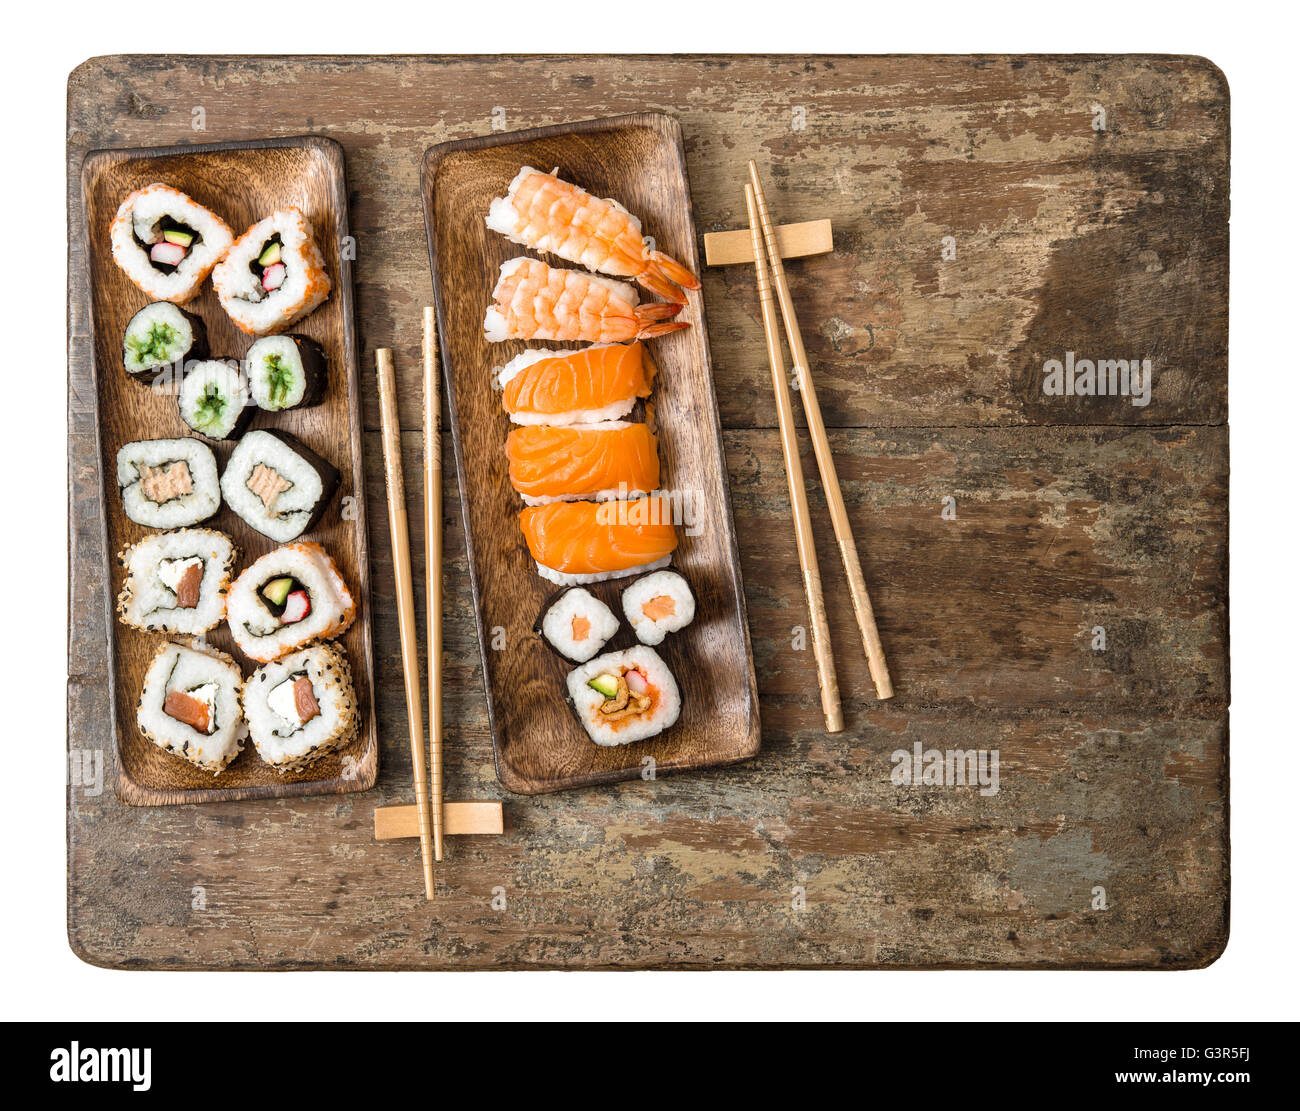 La cuisine japonaise traditionnelle. Rouleaux de sushi, maki, nigiri sur fond de bois rustique. Fruits de mer Banque D'Images